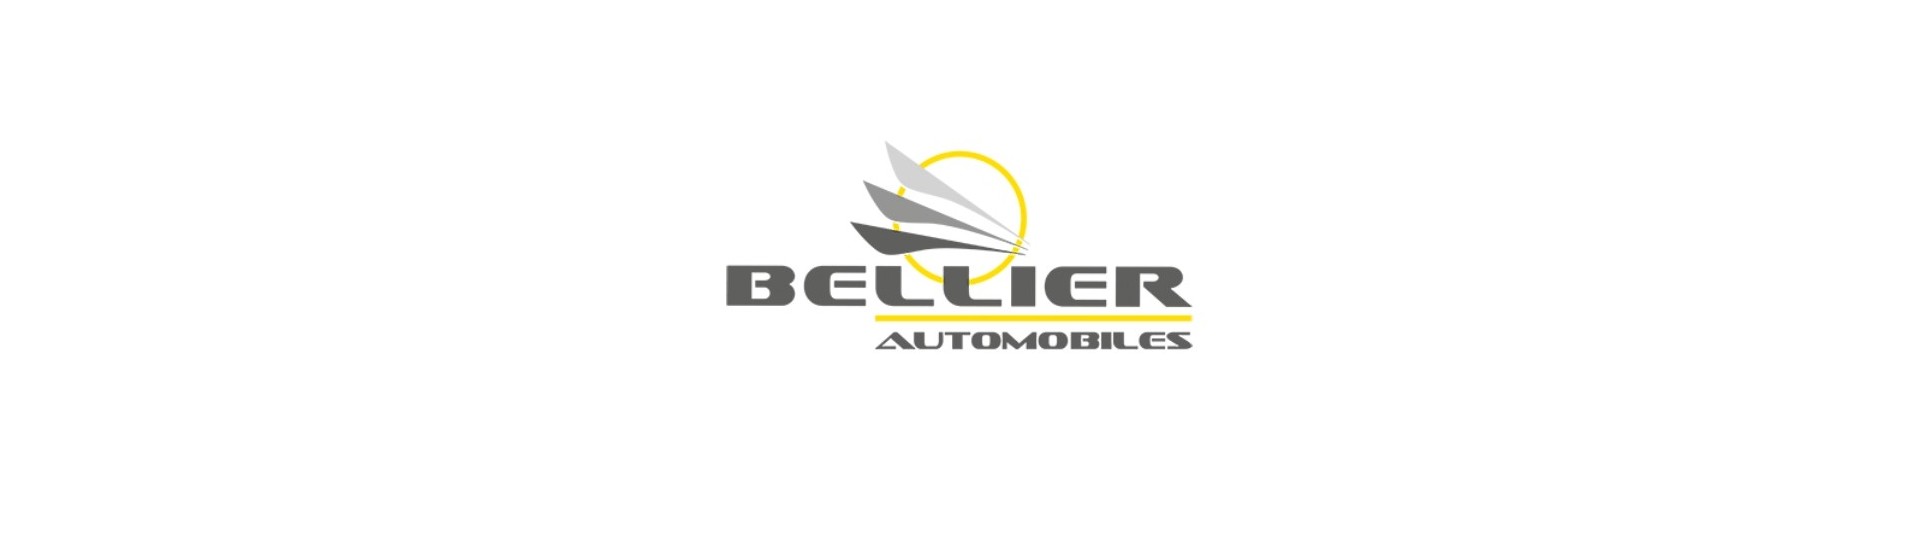 Tank till bästa pris för bil utan tillstånd Bellier